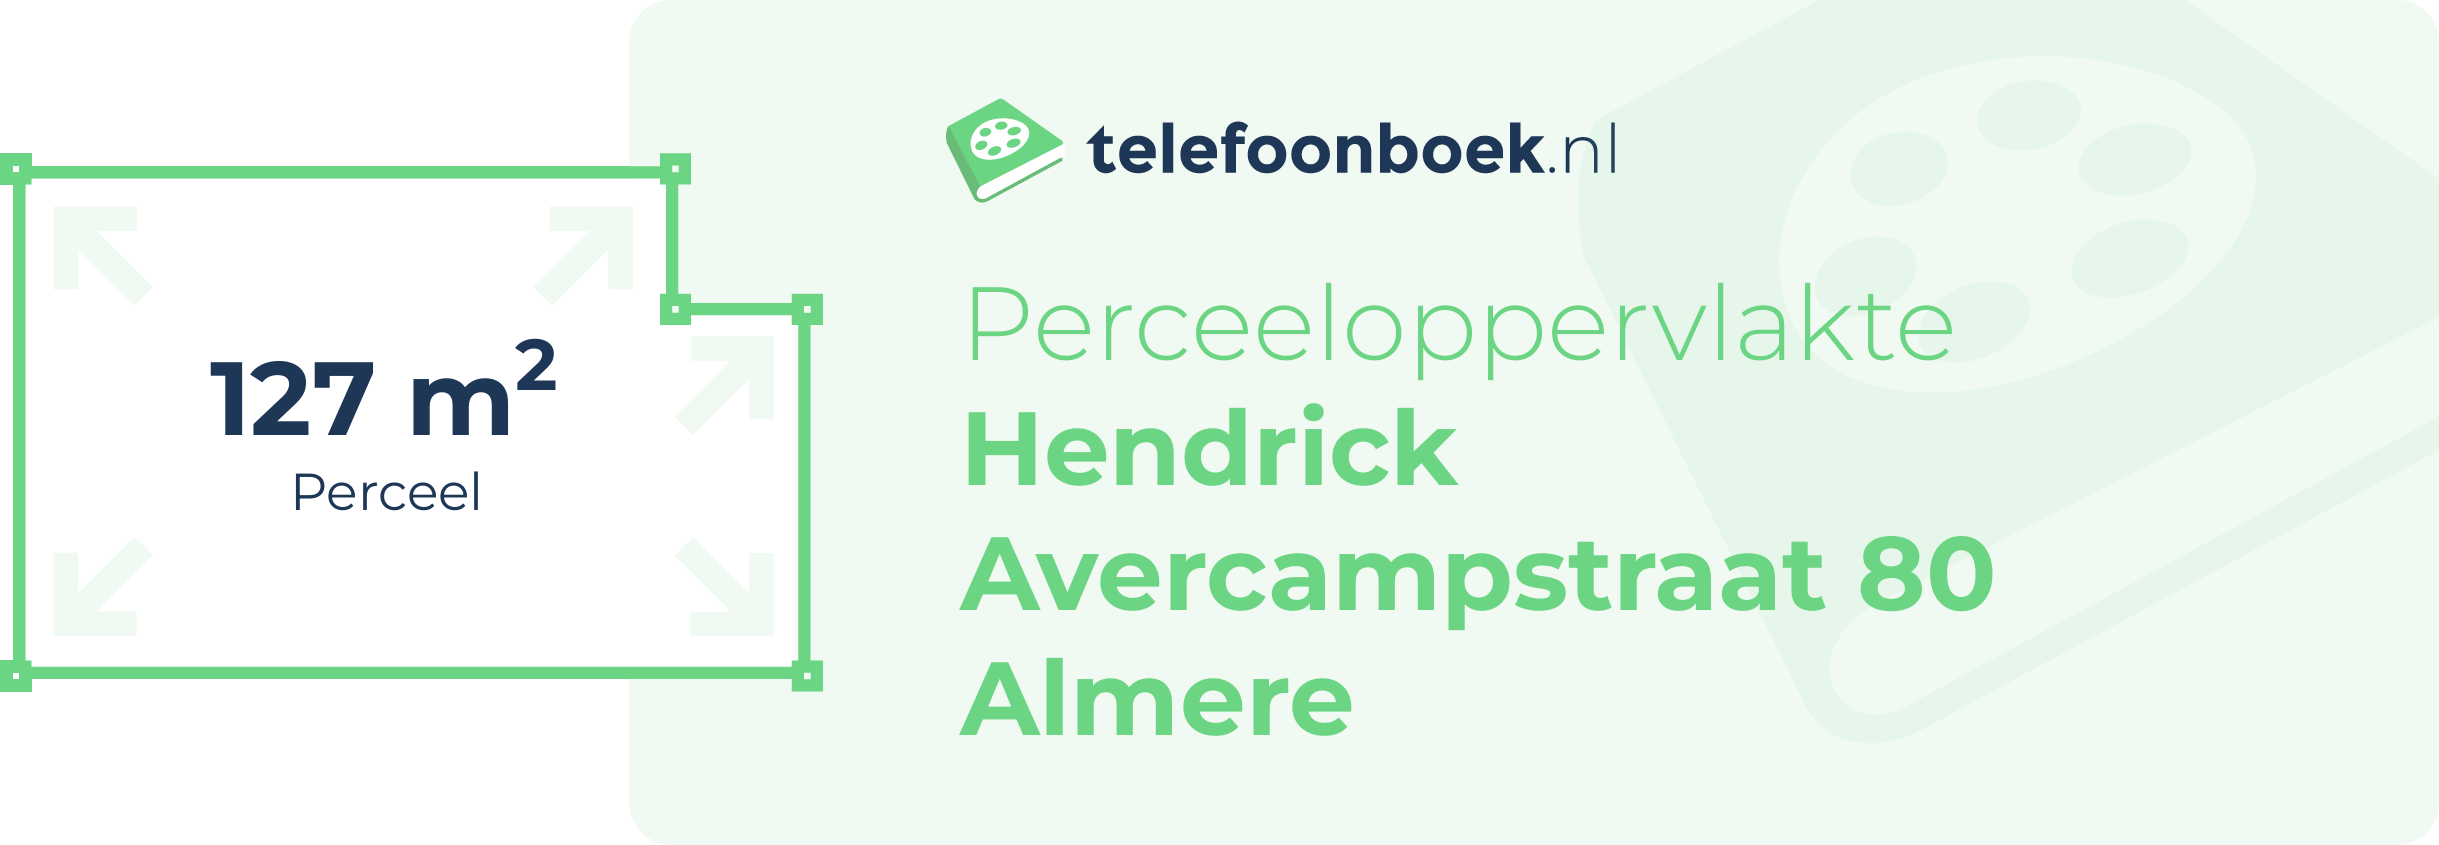 Perceeloppervlakte Hendrick Avercampstraat 80 Almere